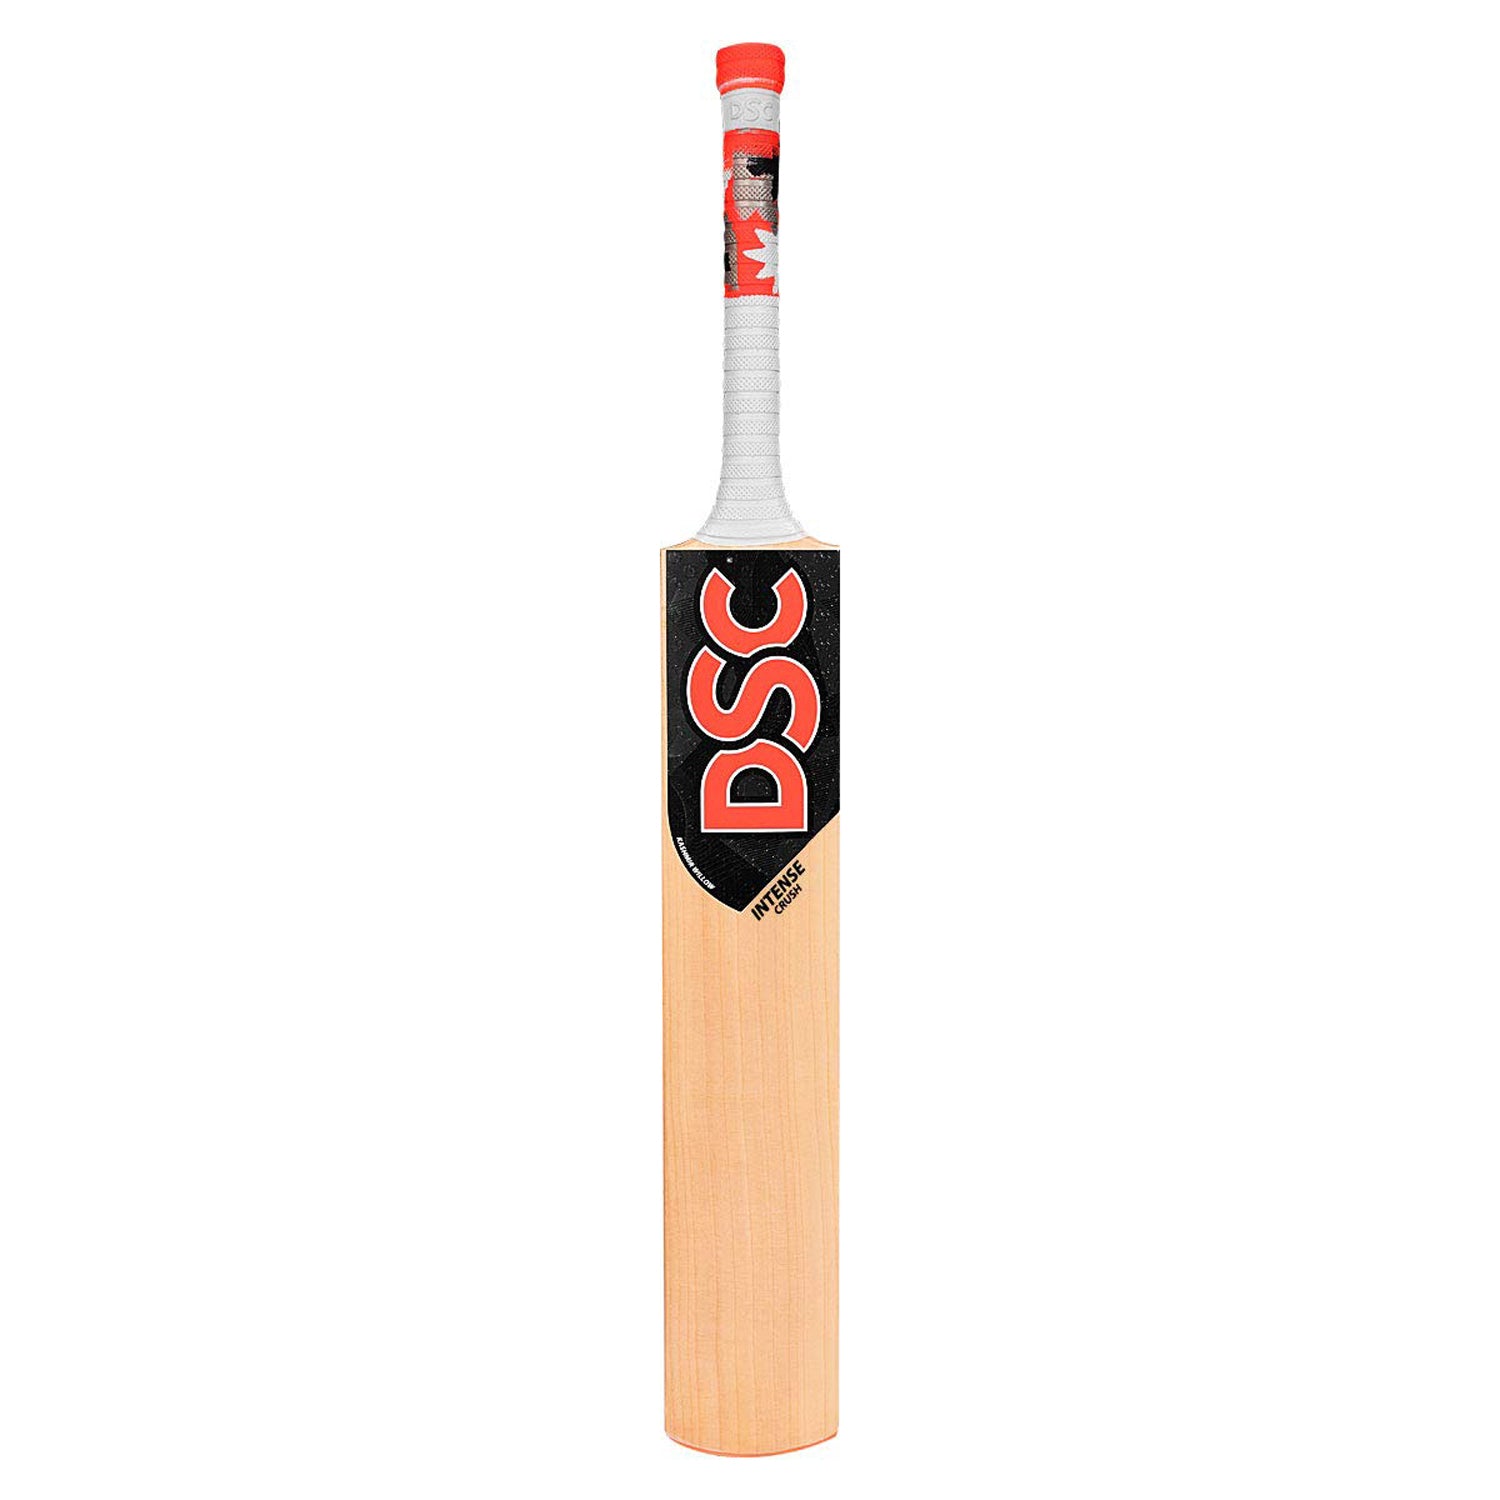 DSC Intense Crush Kashmir Willow Cricket Bat - Best Price online Prokicksports.com